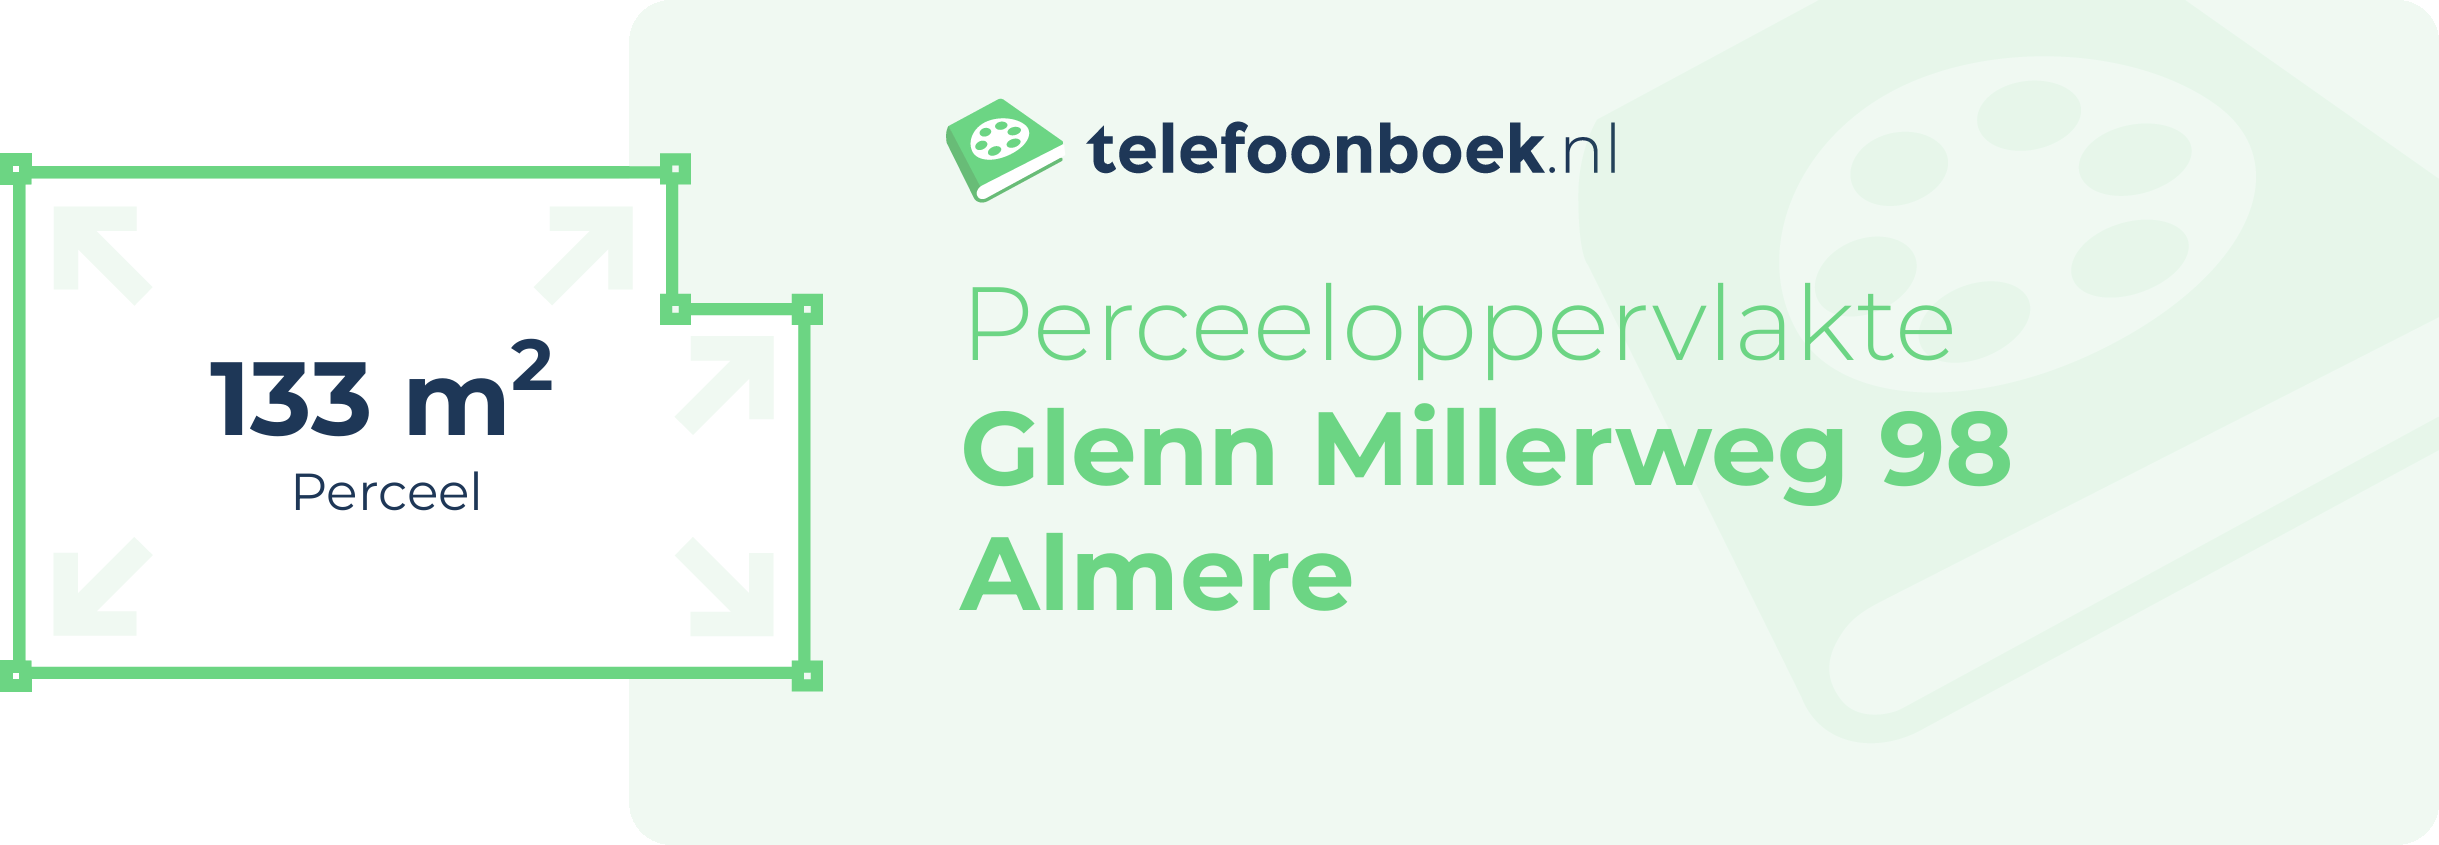 Perceeloppervlakte Glenn Millerweg 98 Almere